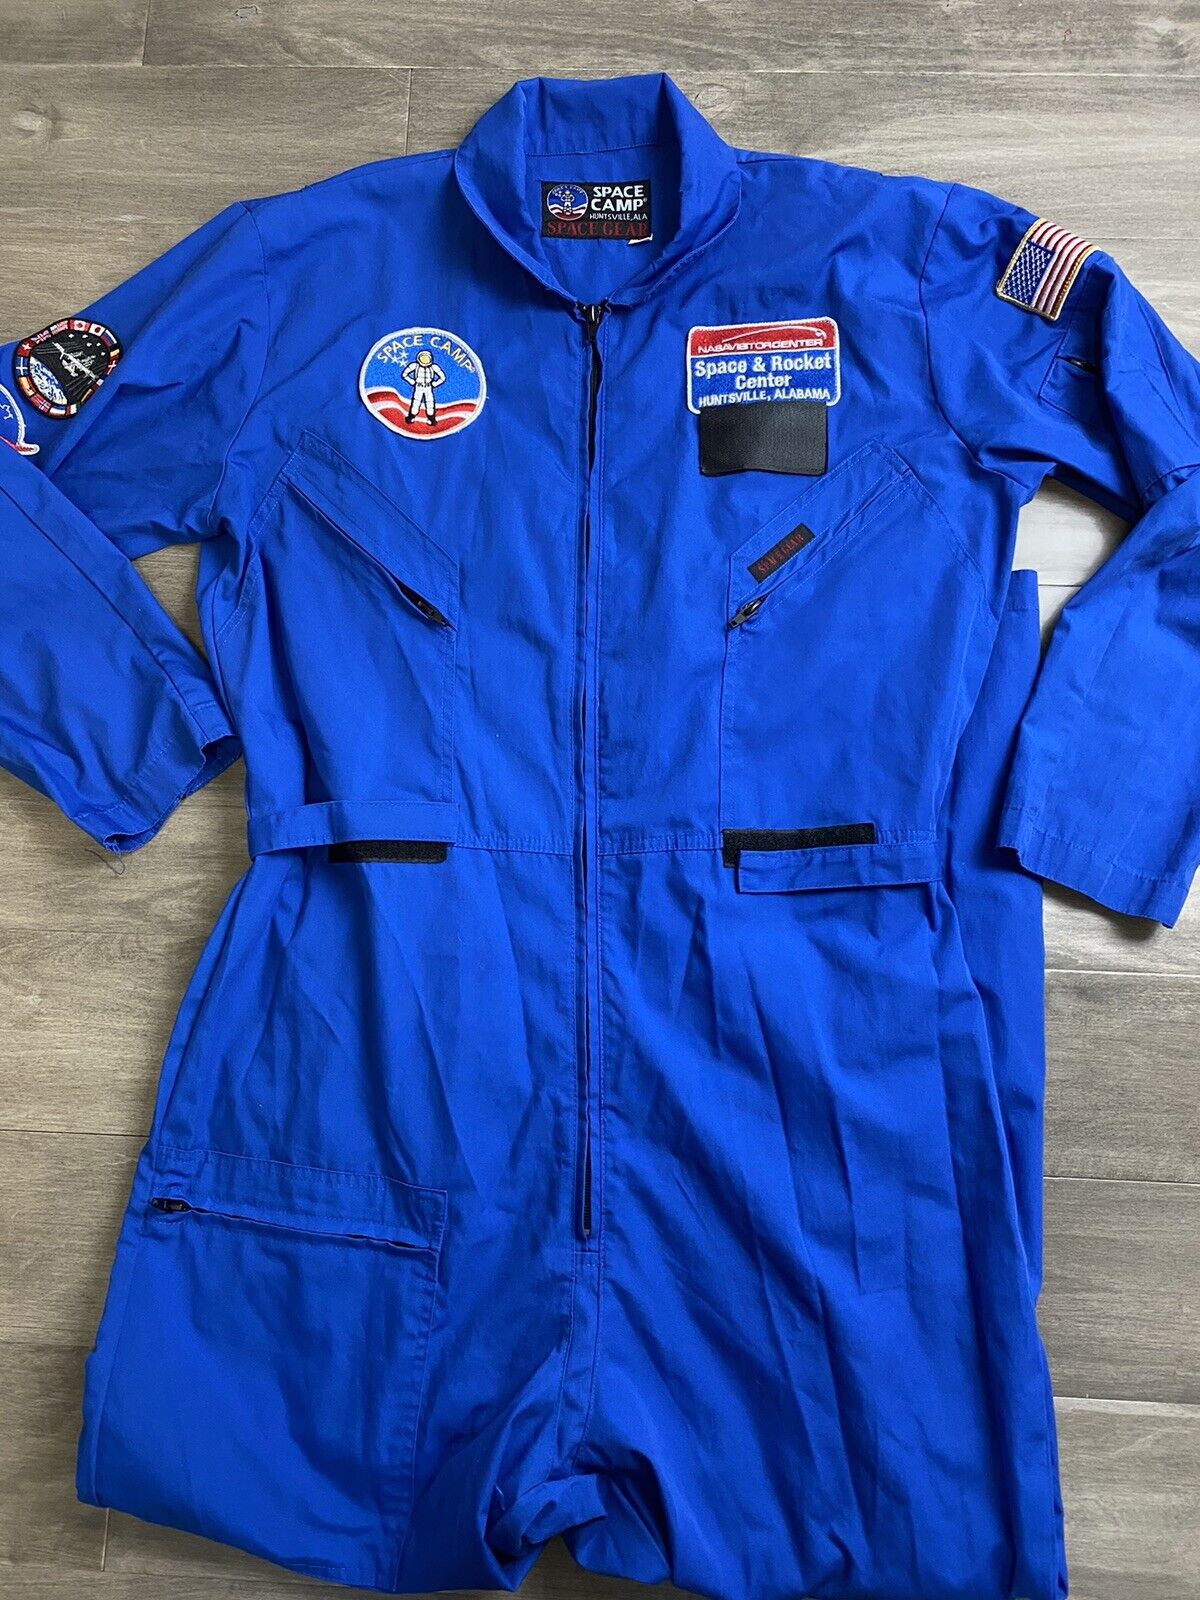 Vintage NASA Space Camp official blue jumpsuit coveralls uniform adult Large